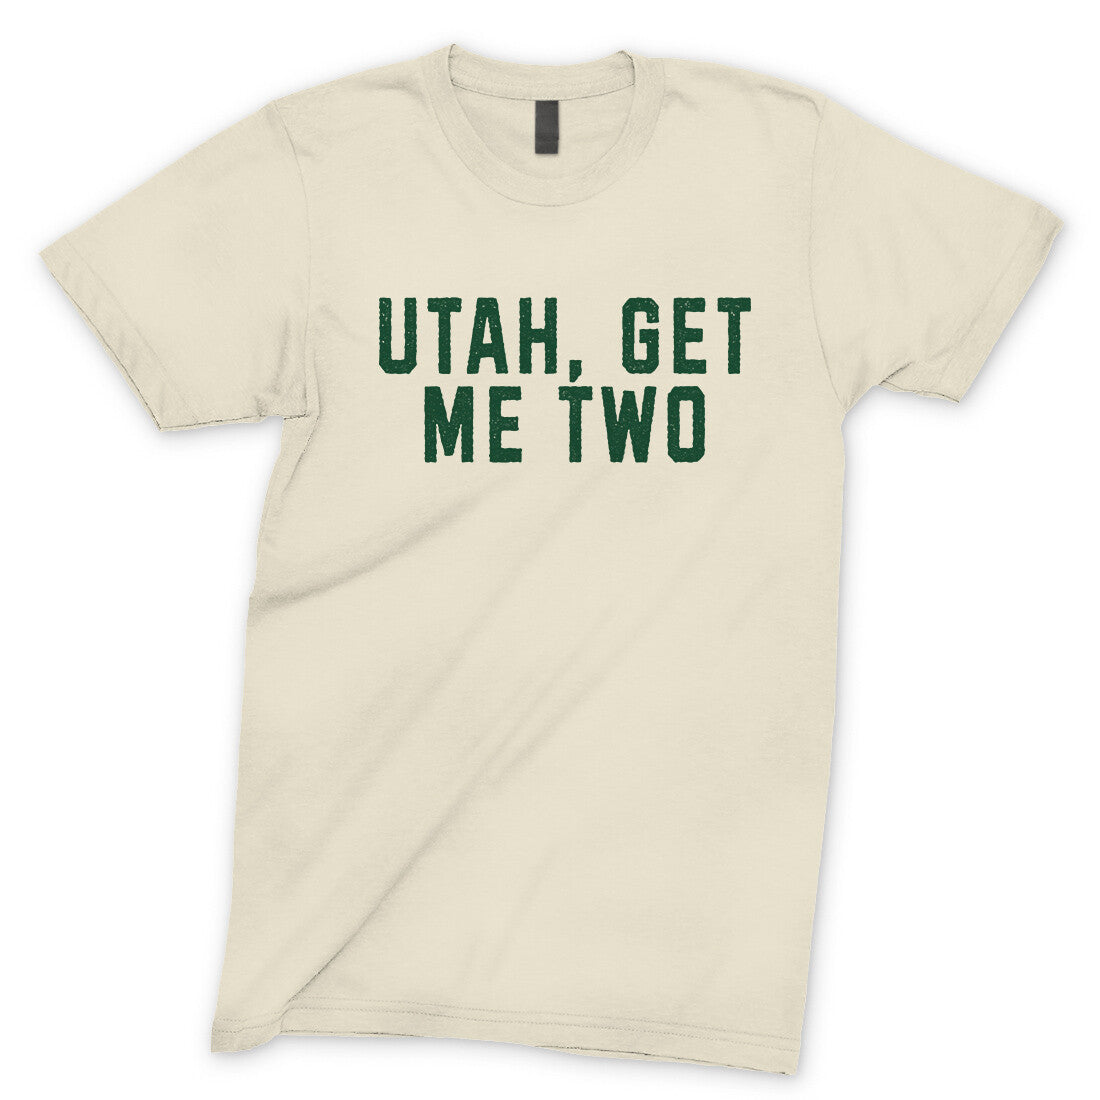 Utah Get me Two in Natural Color